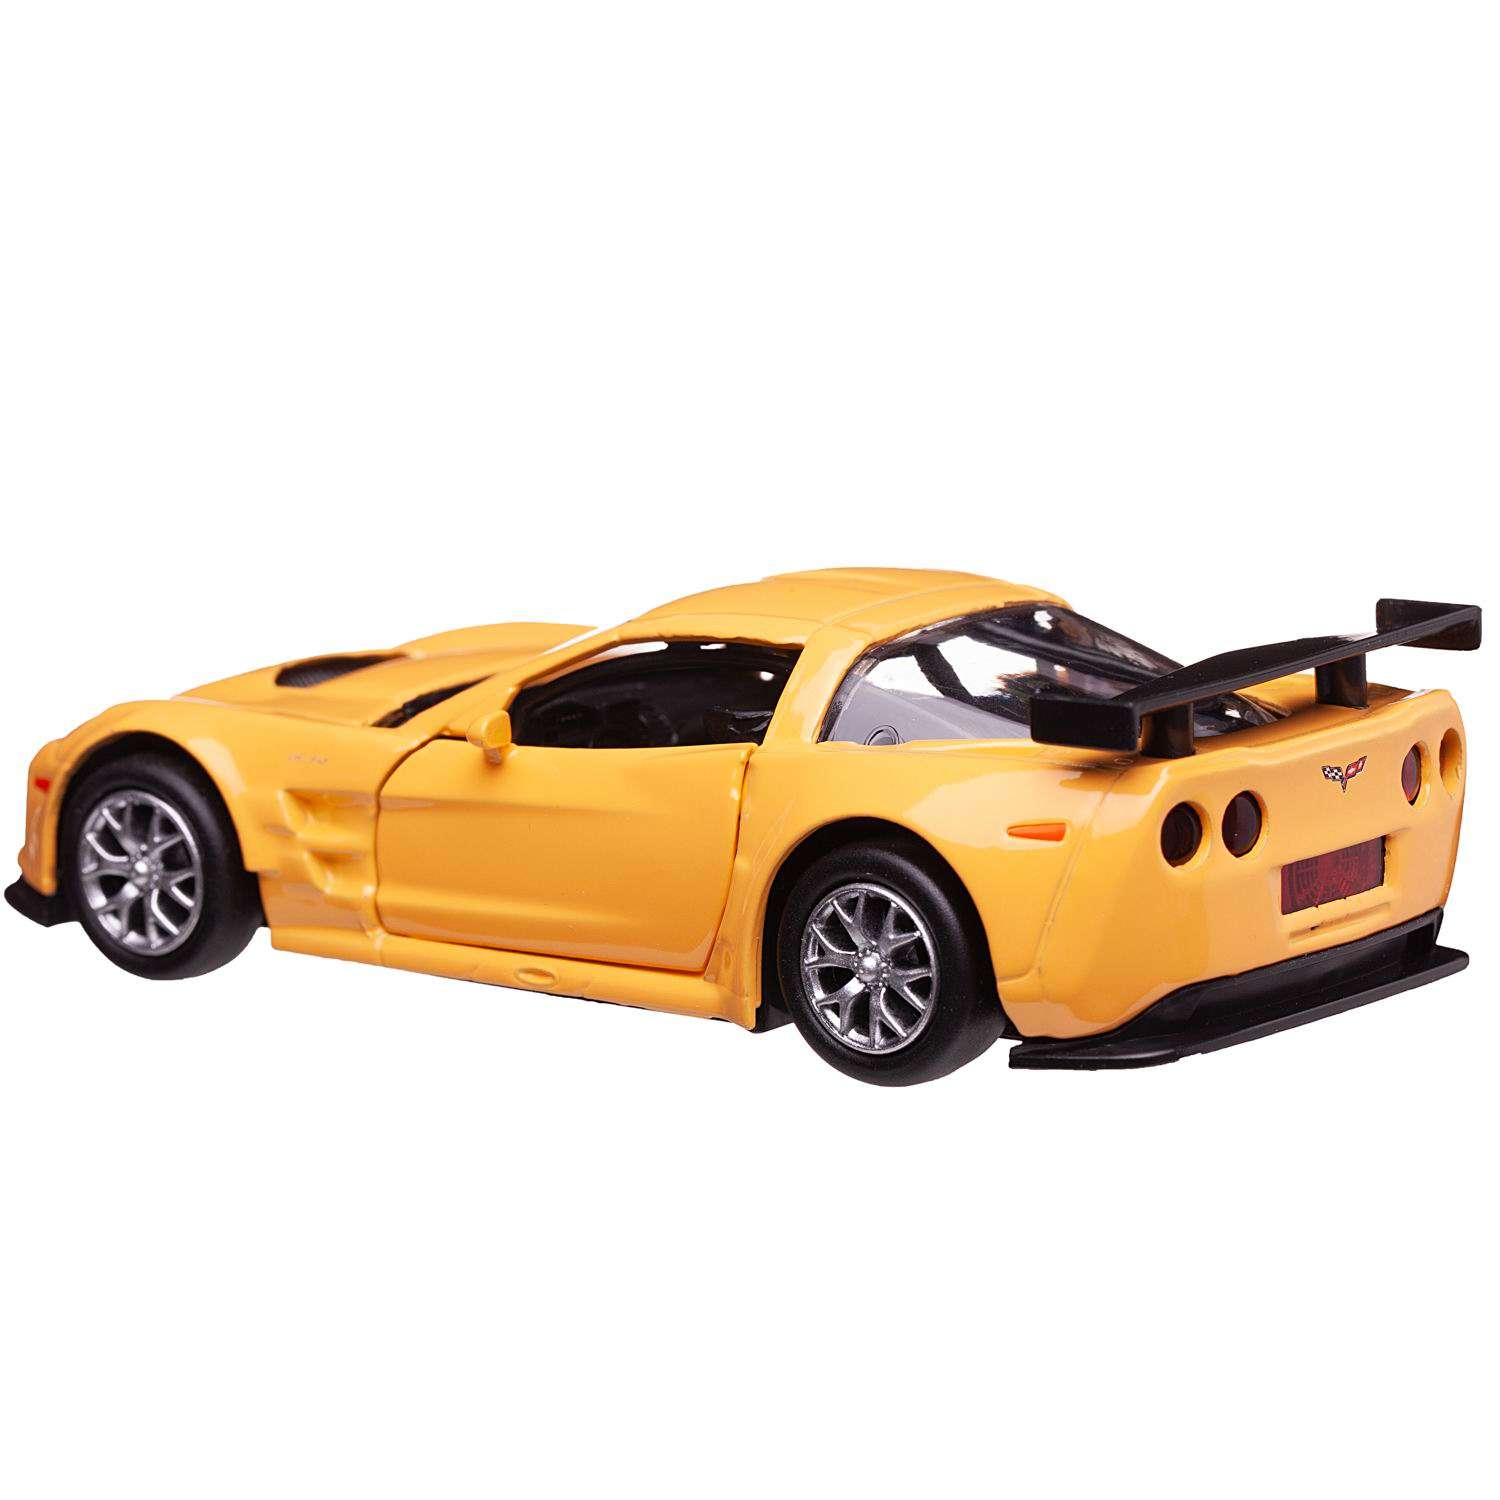 Машина металлическая Uni-Fortune Chevrolet Corvette C6 R желтый цвет двери открываются 554003-YL - фото 5